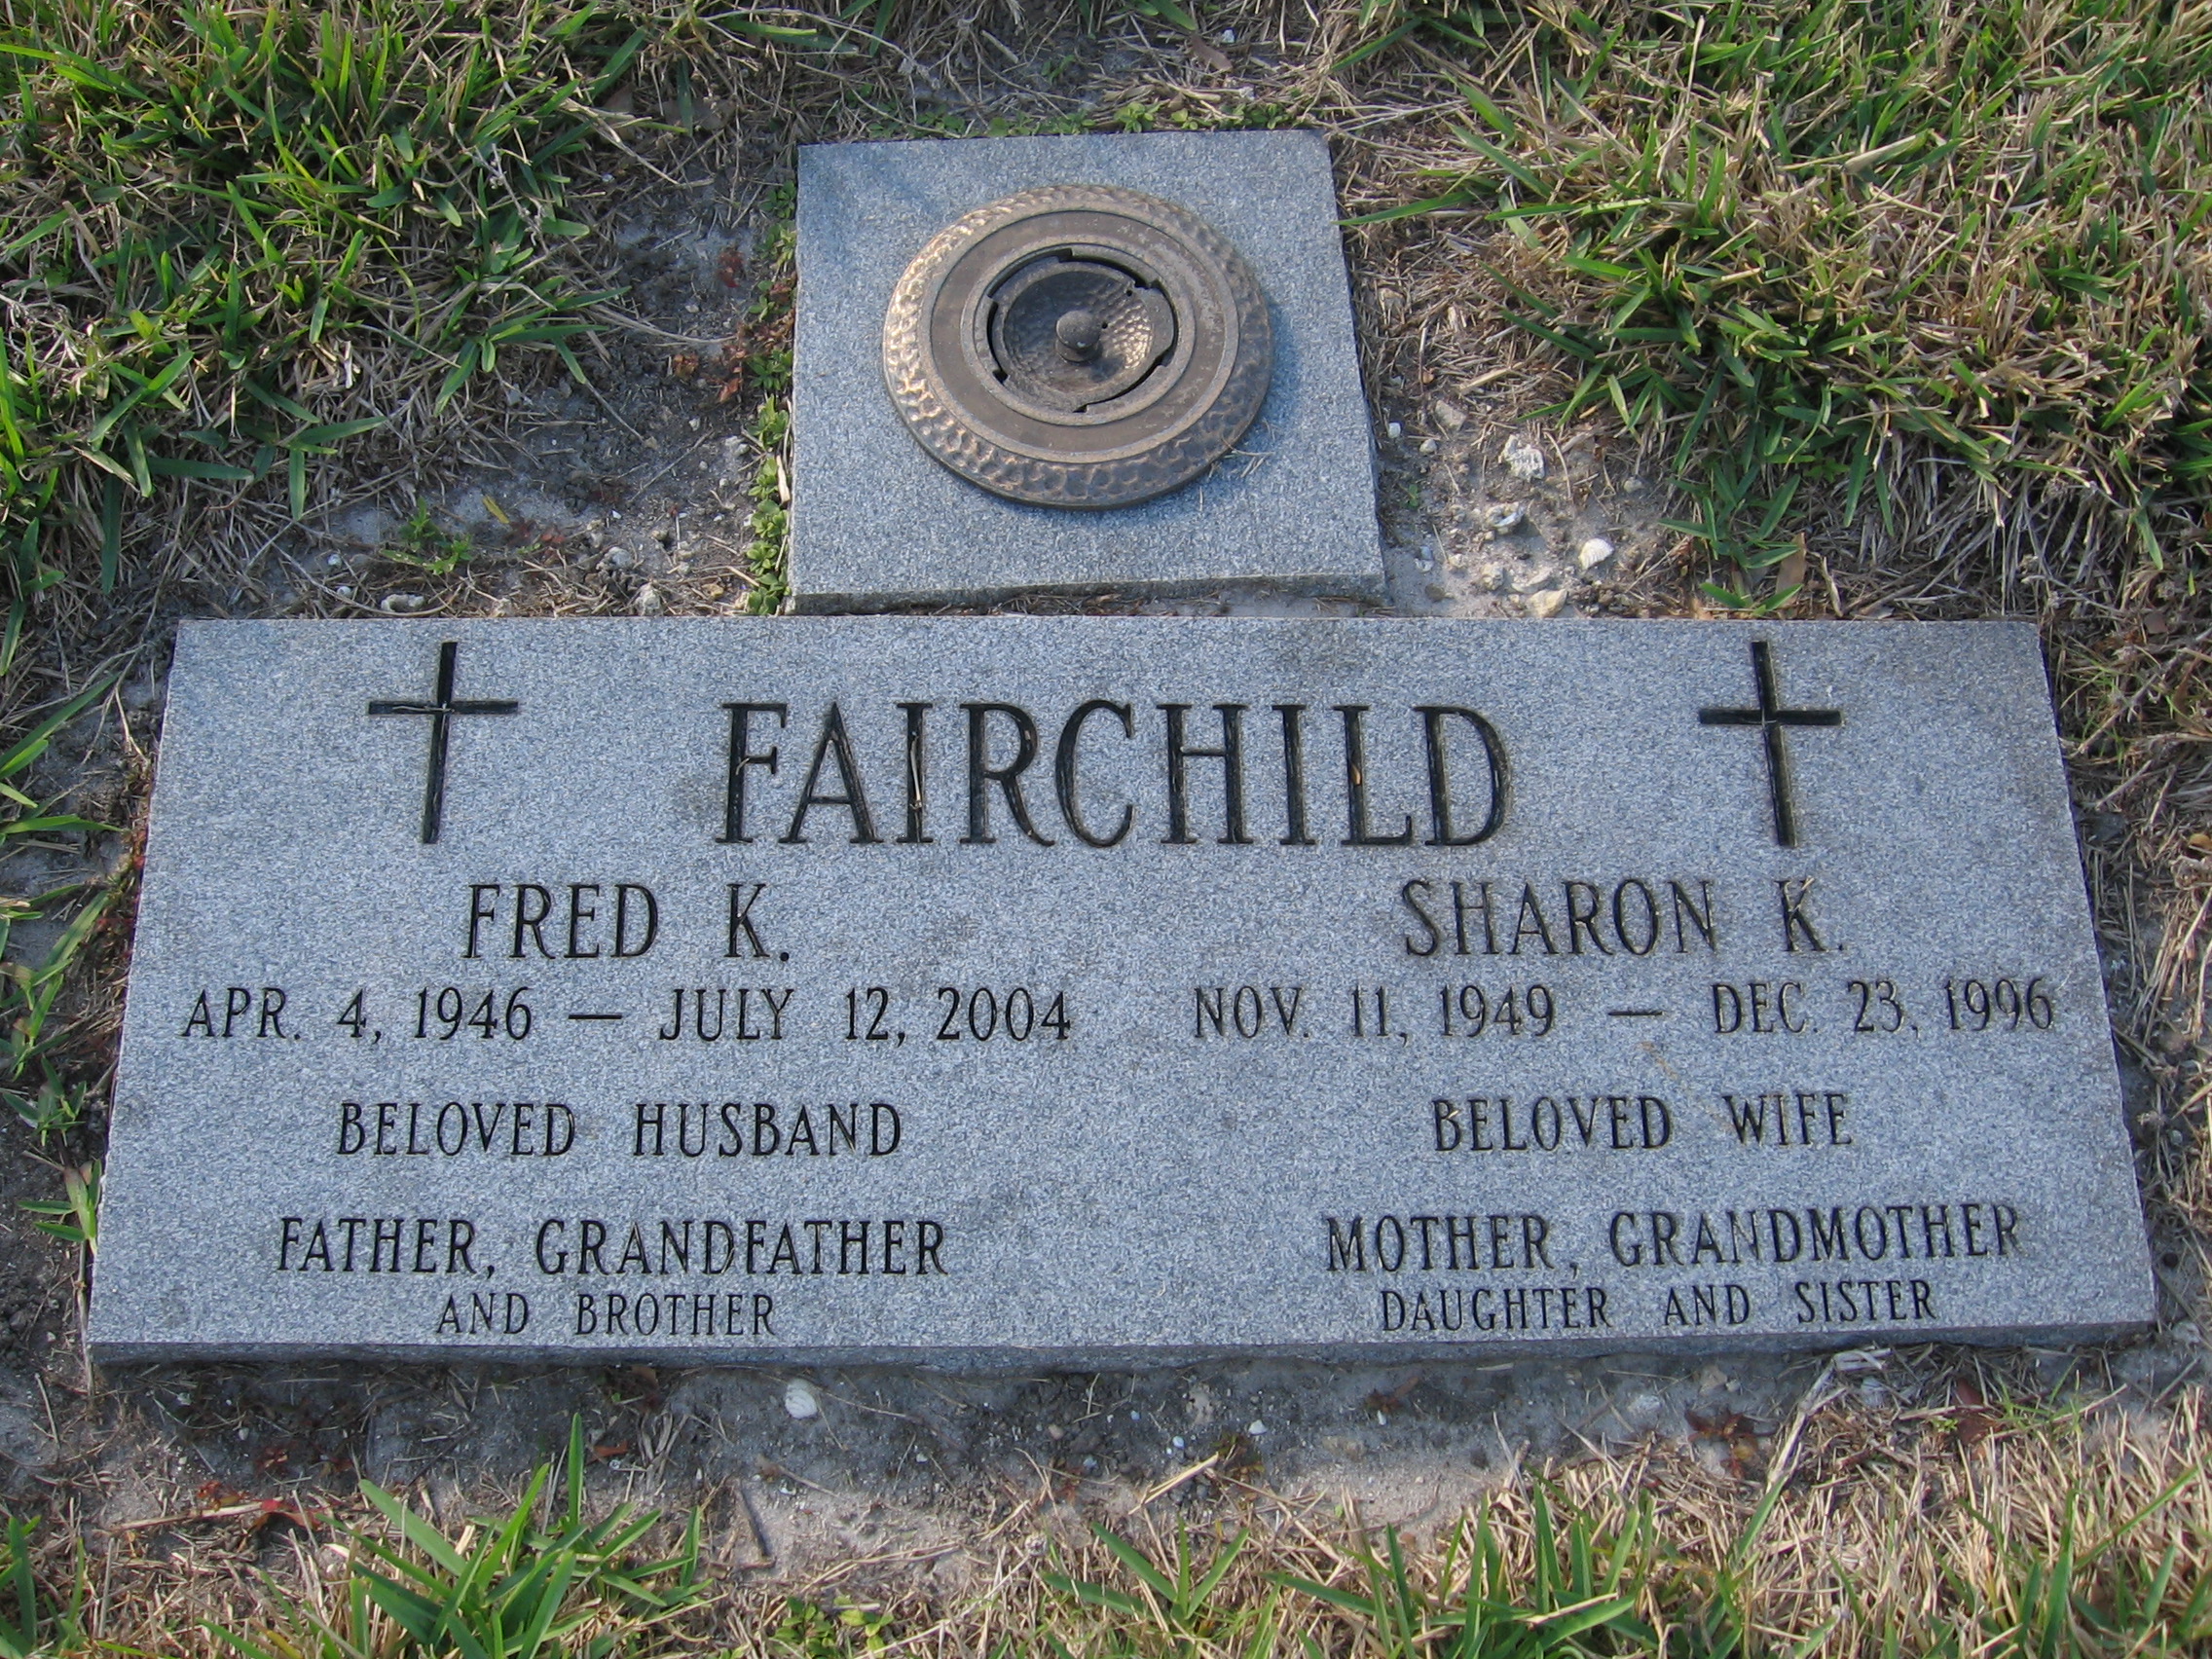 Fred K Fairchild